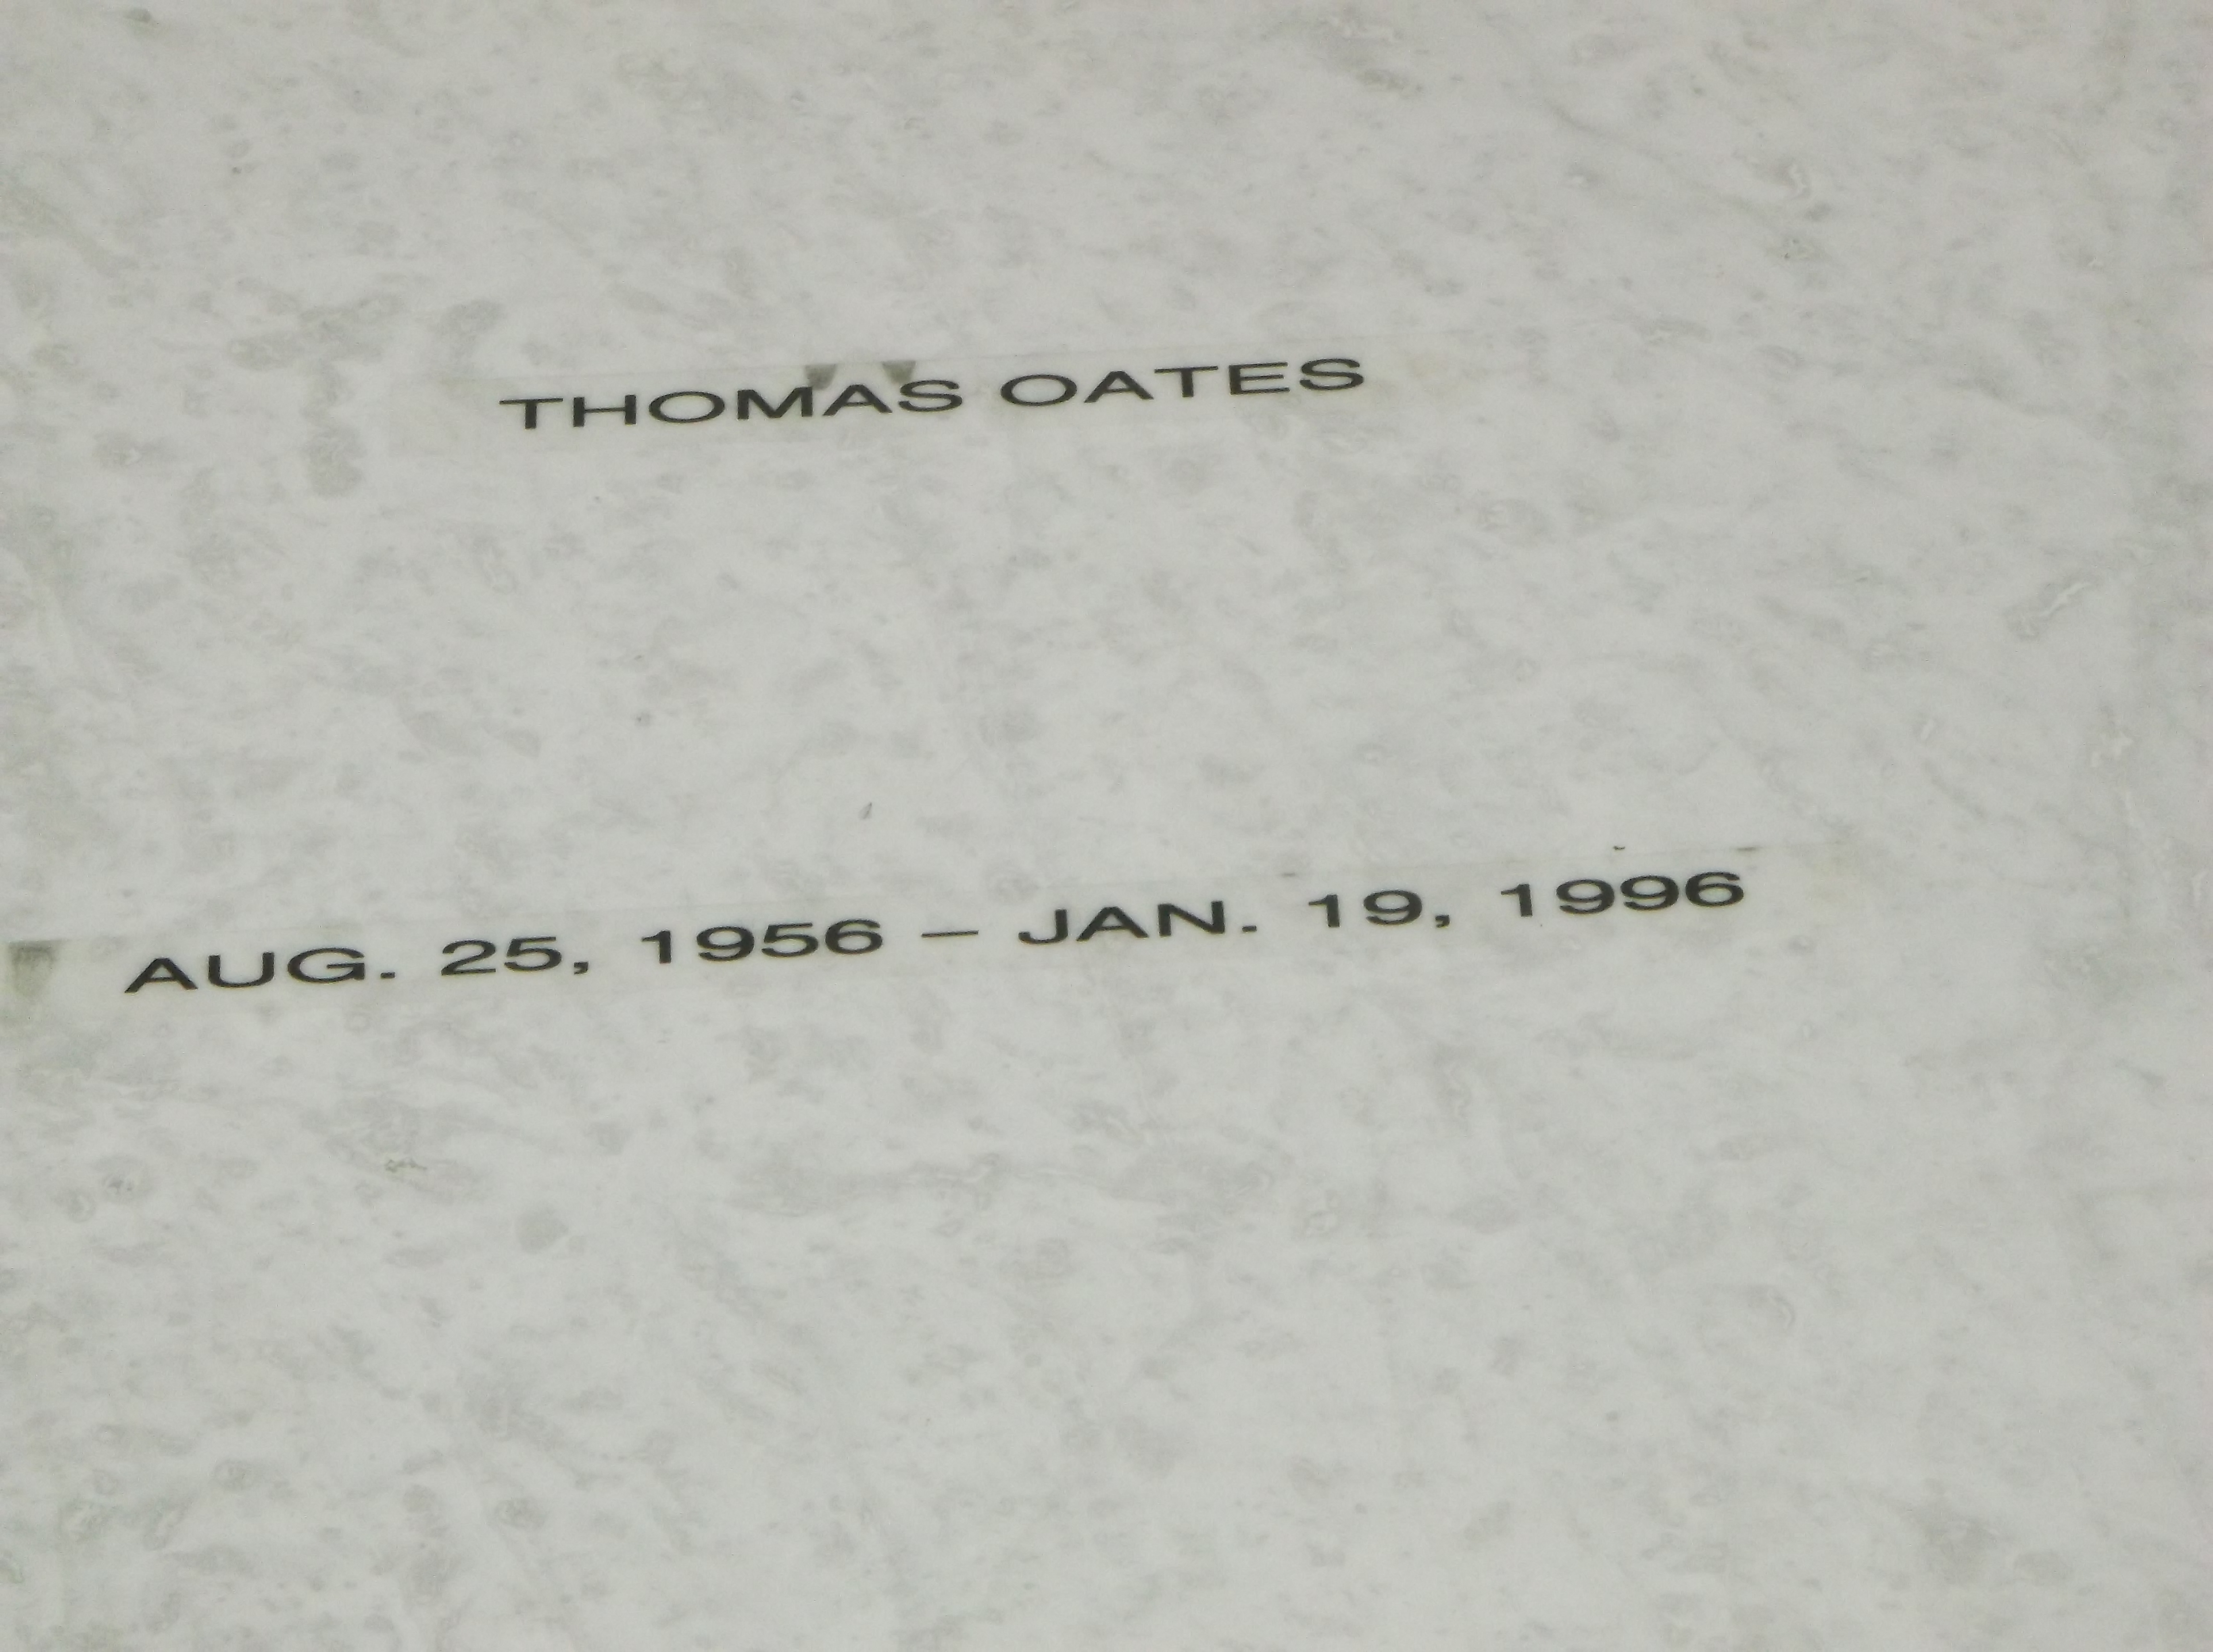 Thomas Oates